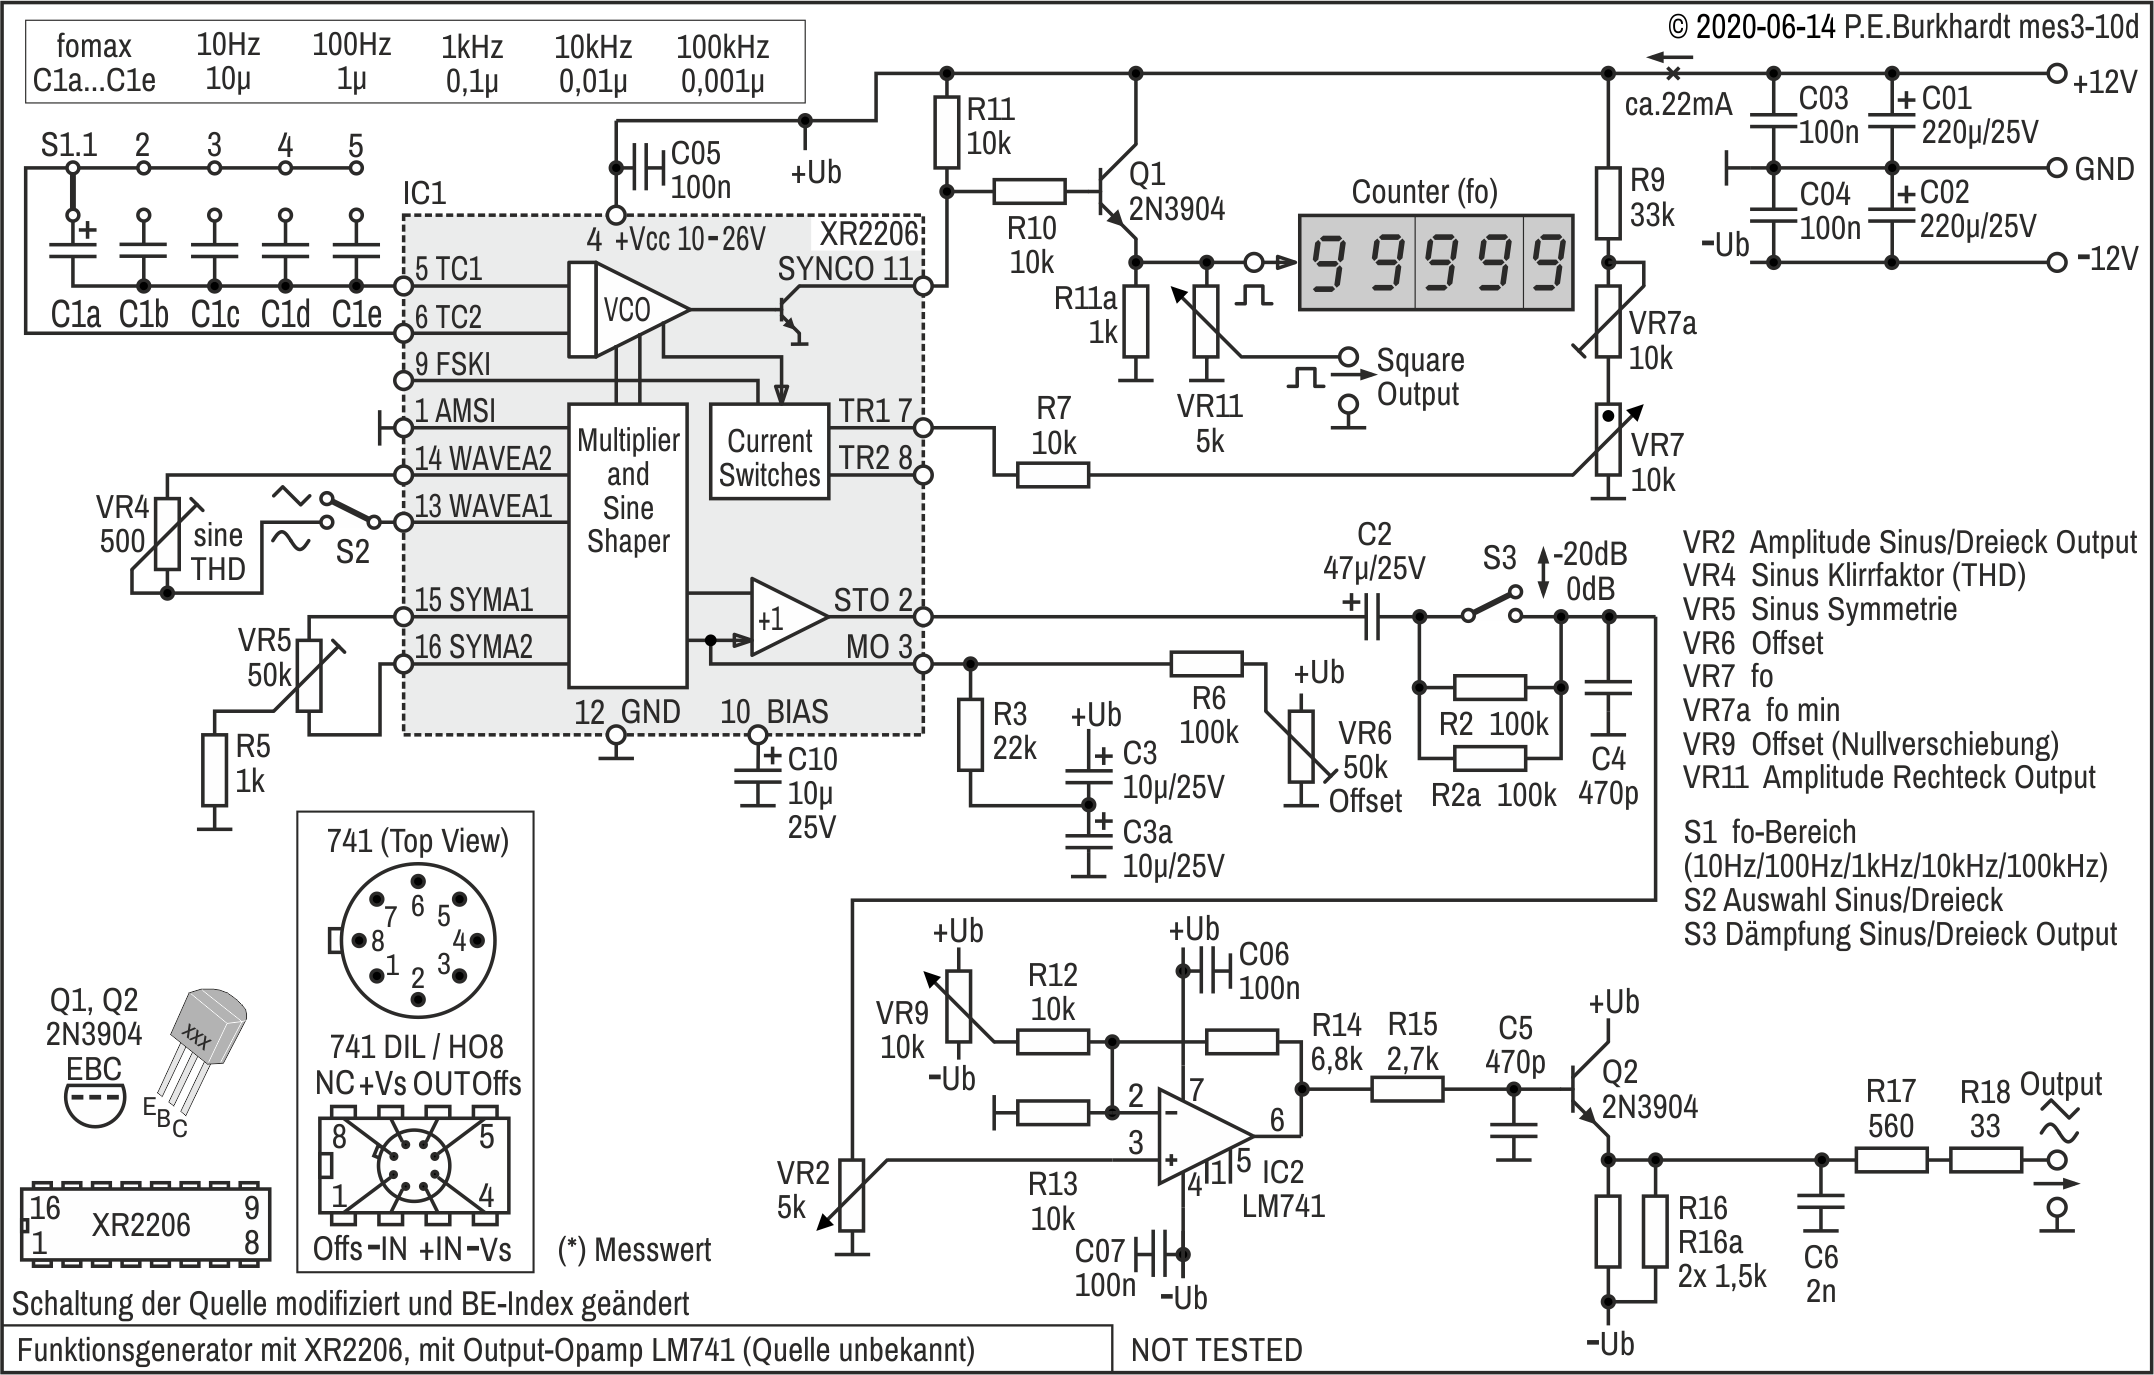 Funktionsgenerator XR2206 mit LM741